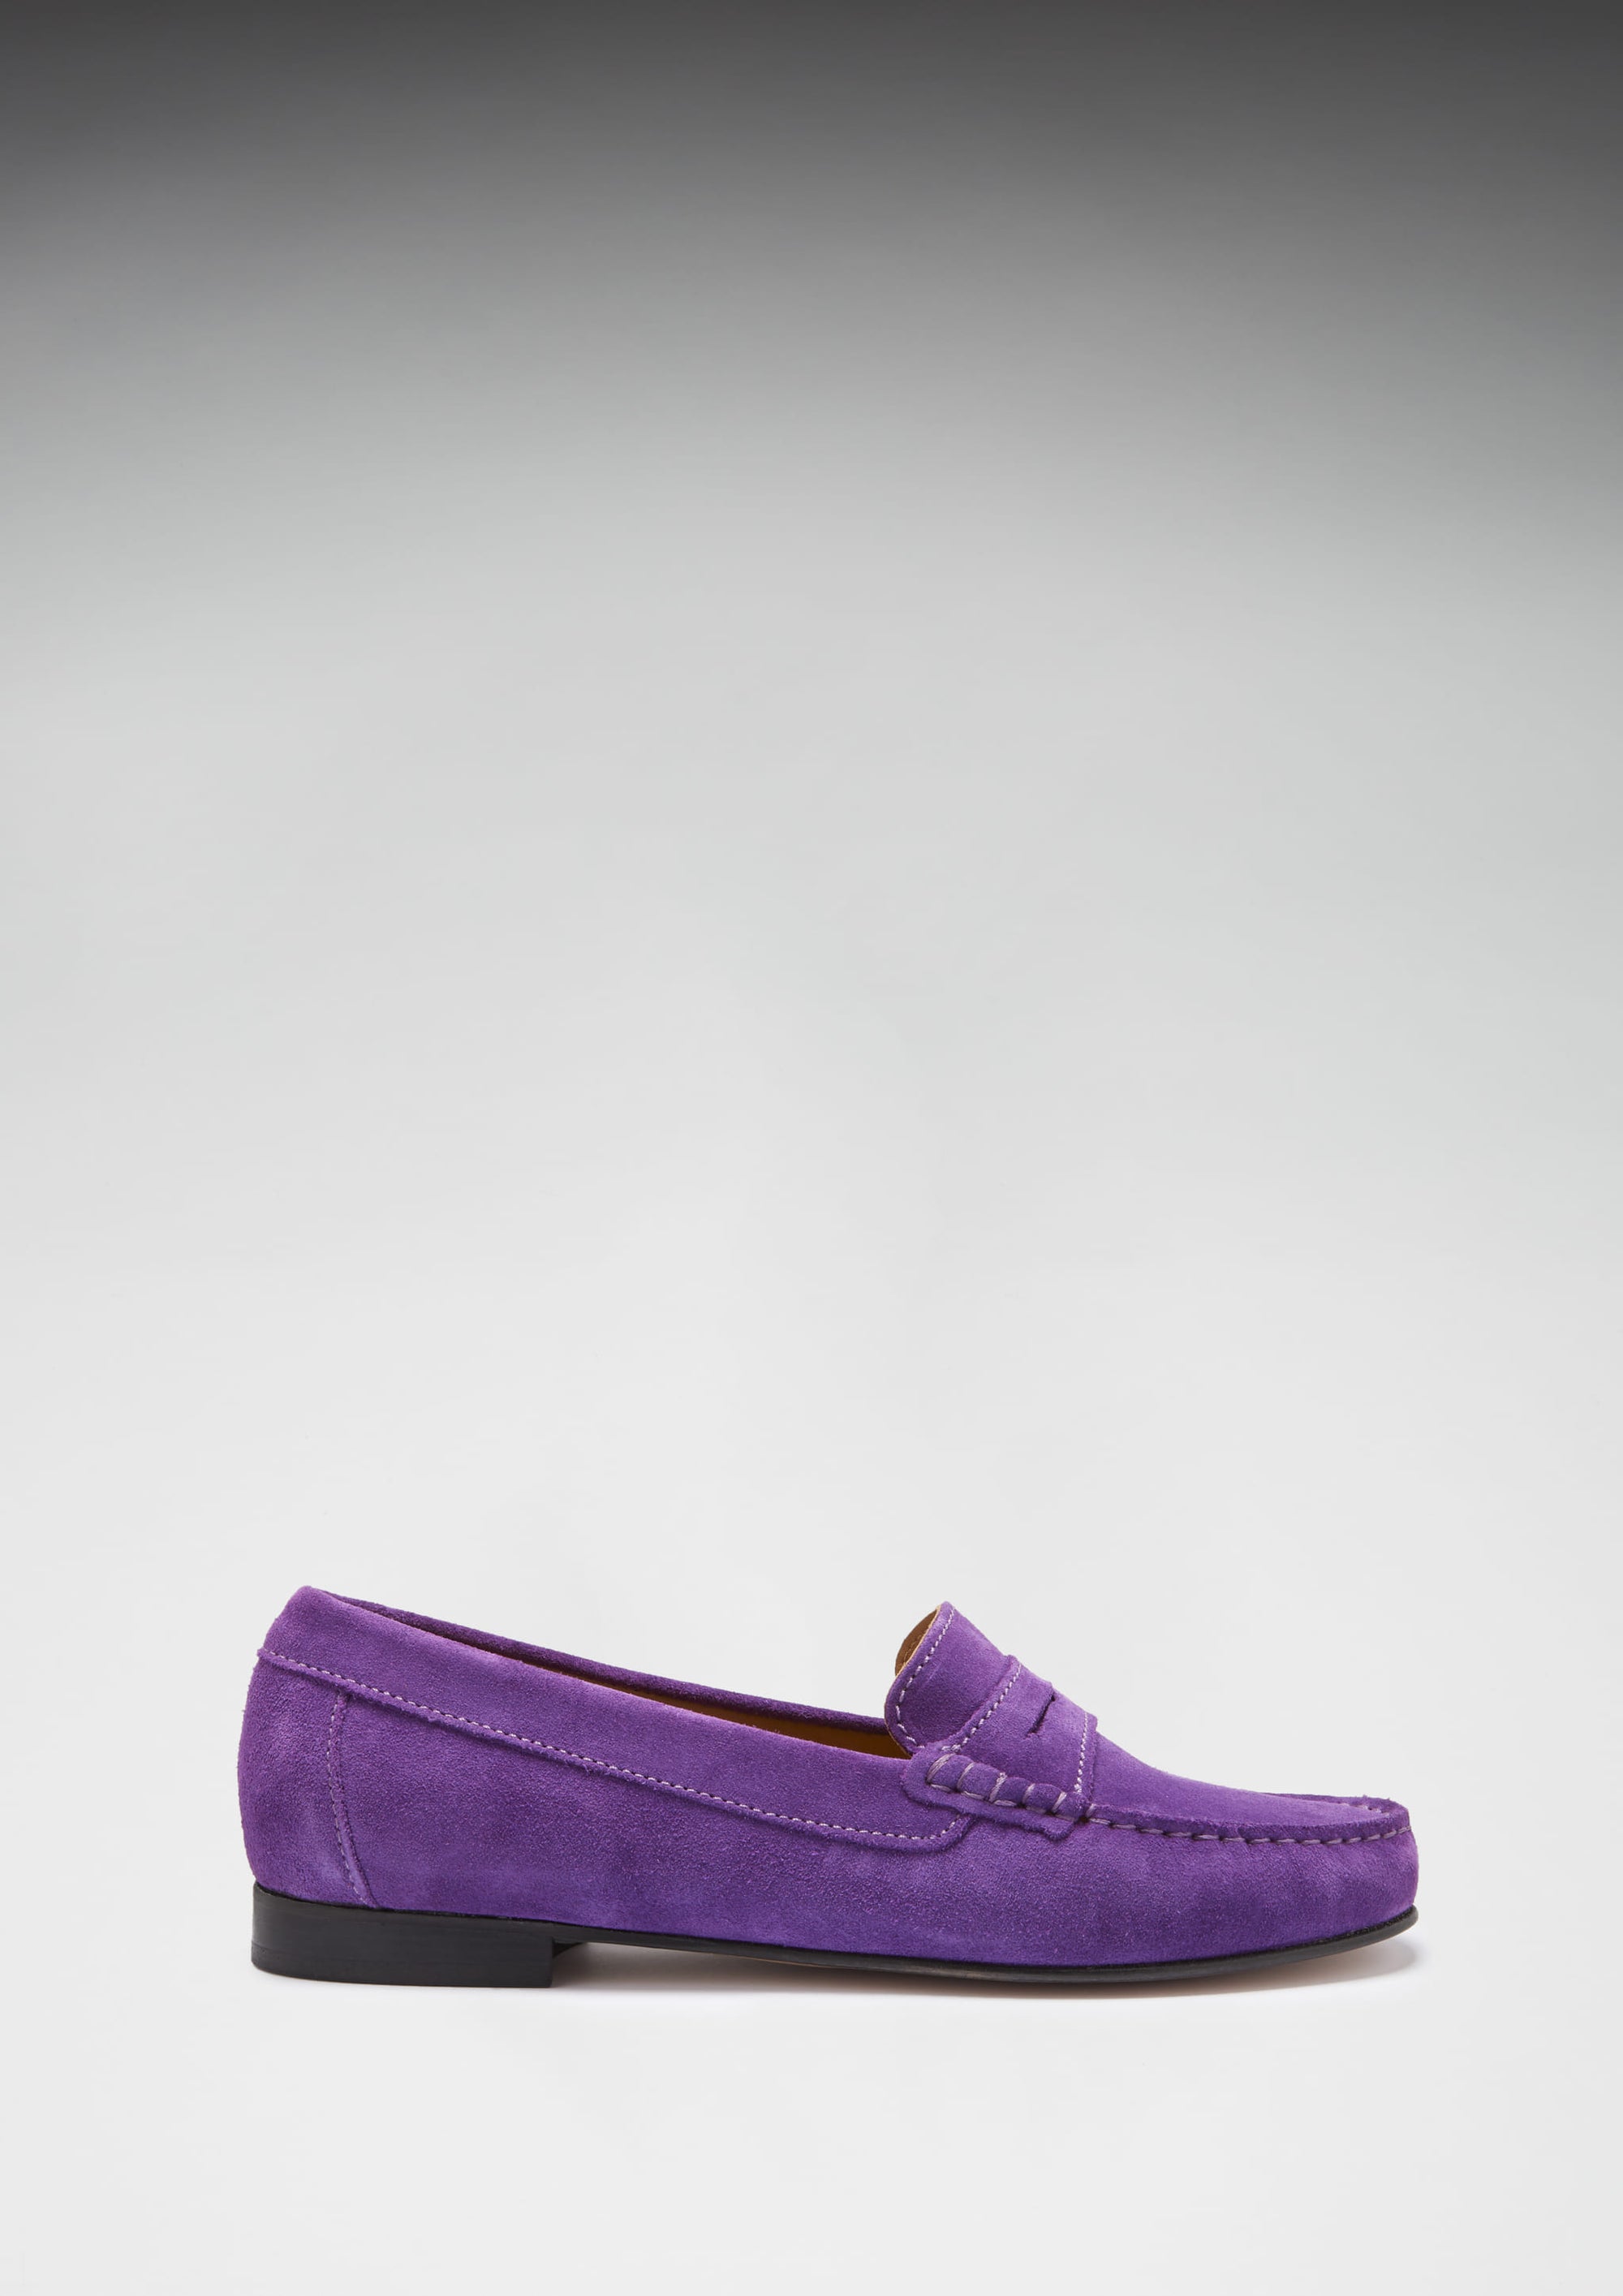 Penny Loafers pour femmes, semelle en cuir, daim violet